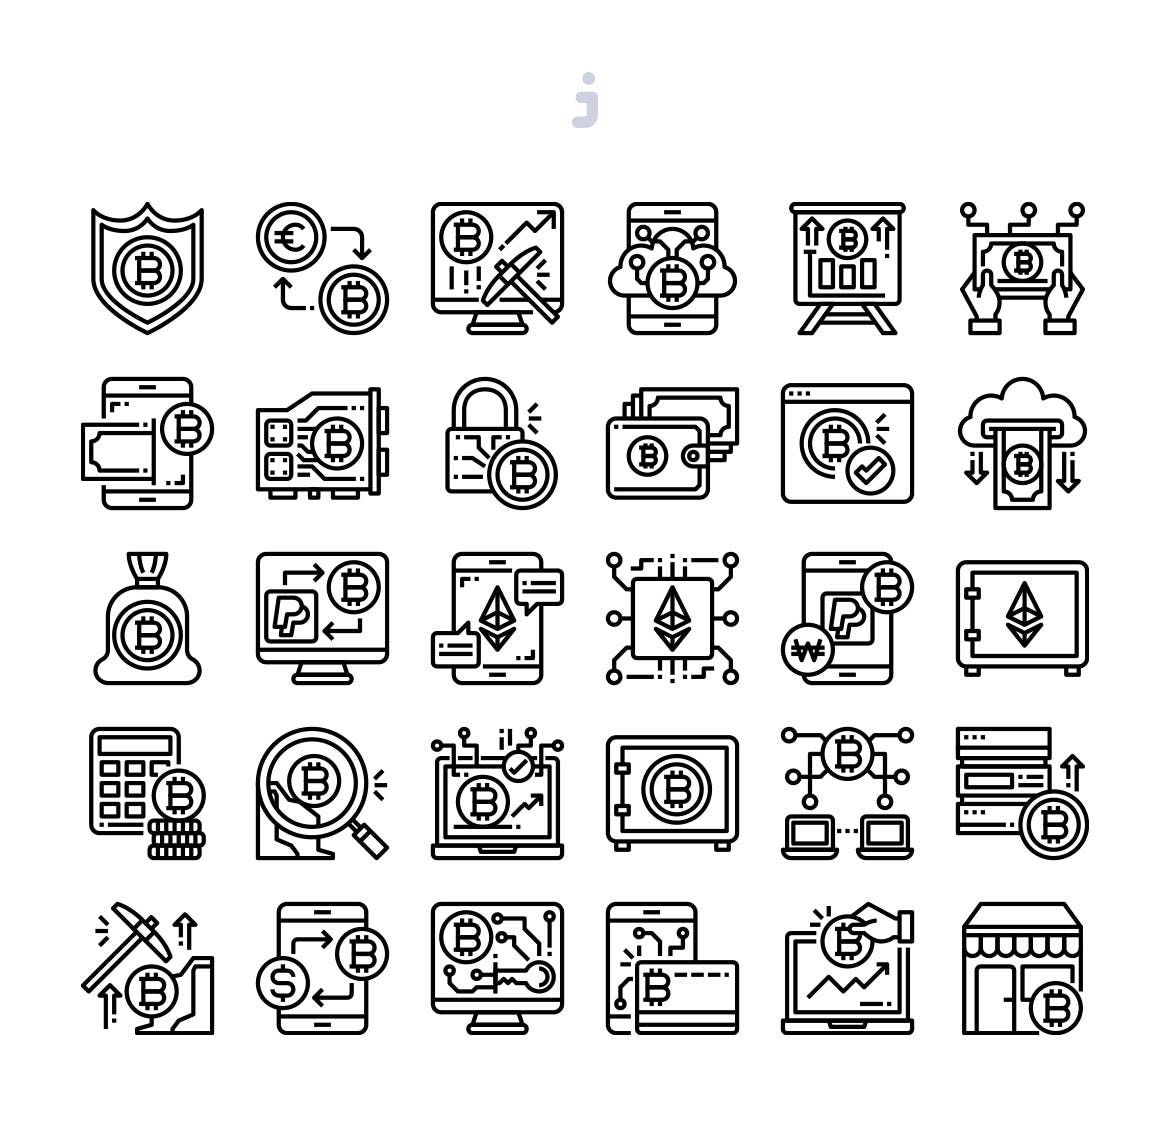 30枚加密货币主题矢量图标 30 Cryptocurrency Icons插图(2)